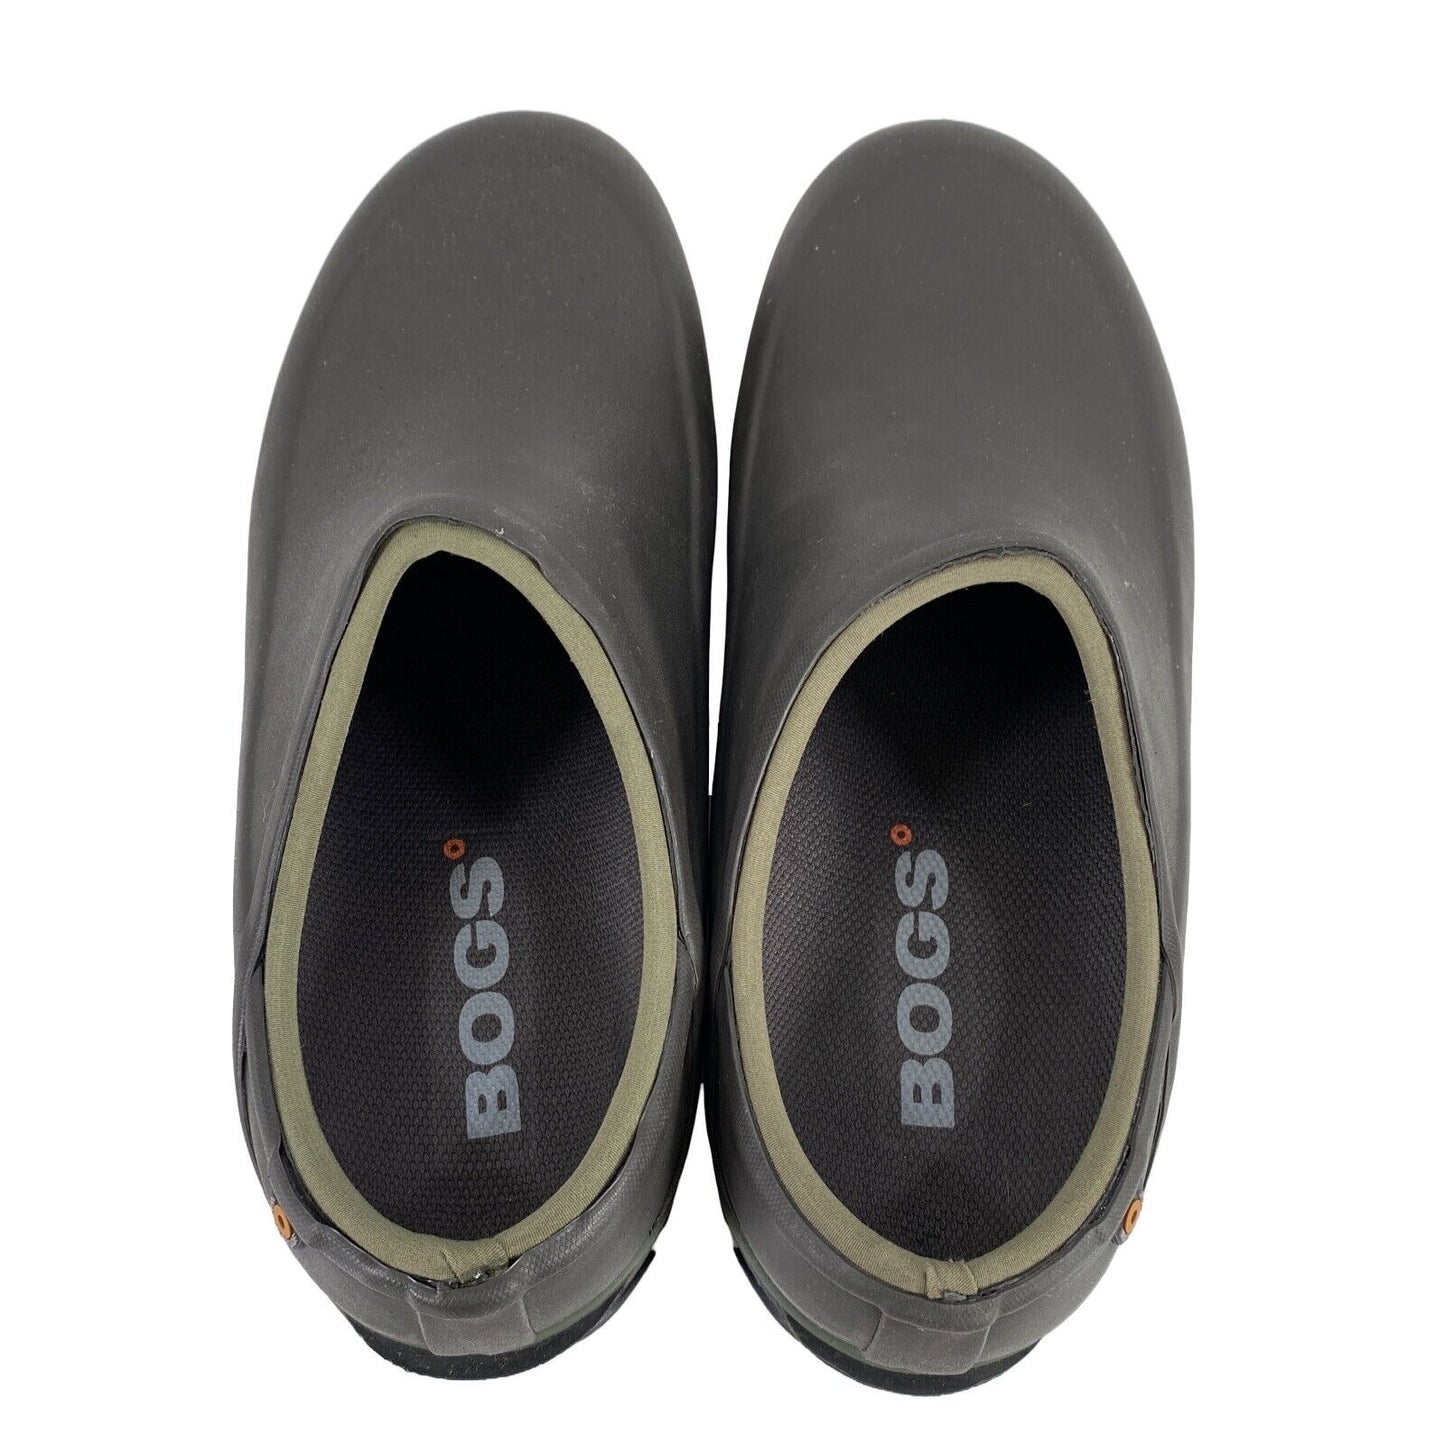 NEW Bogs Men's Brown Sauvie Slip On Waterproof Clog Shoes - 9